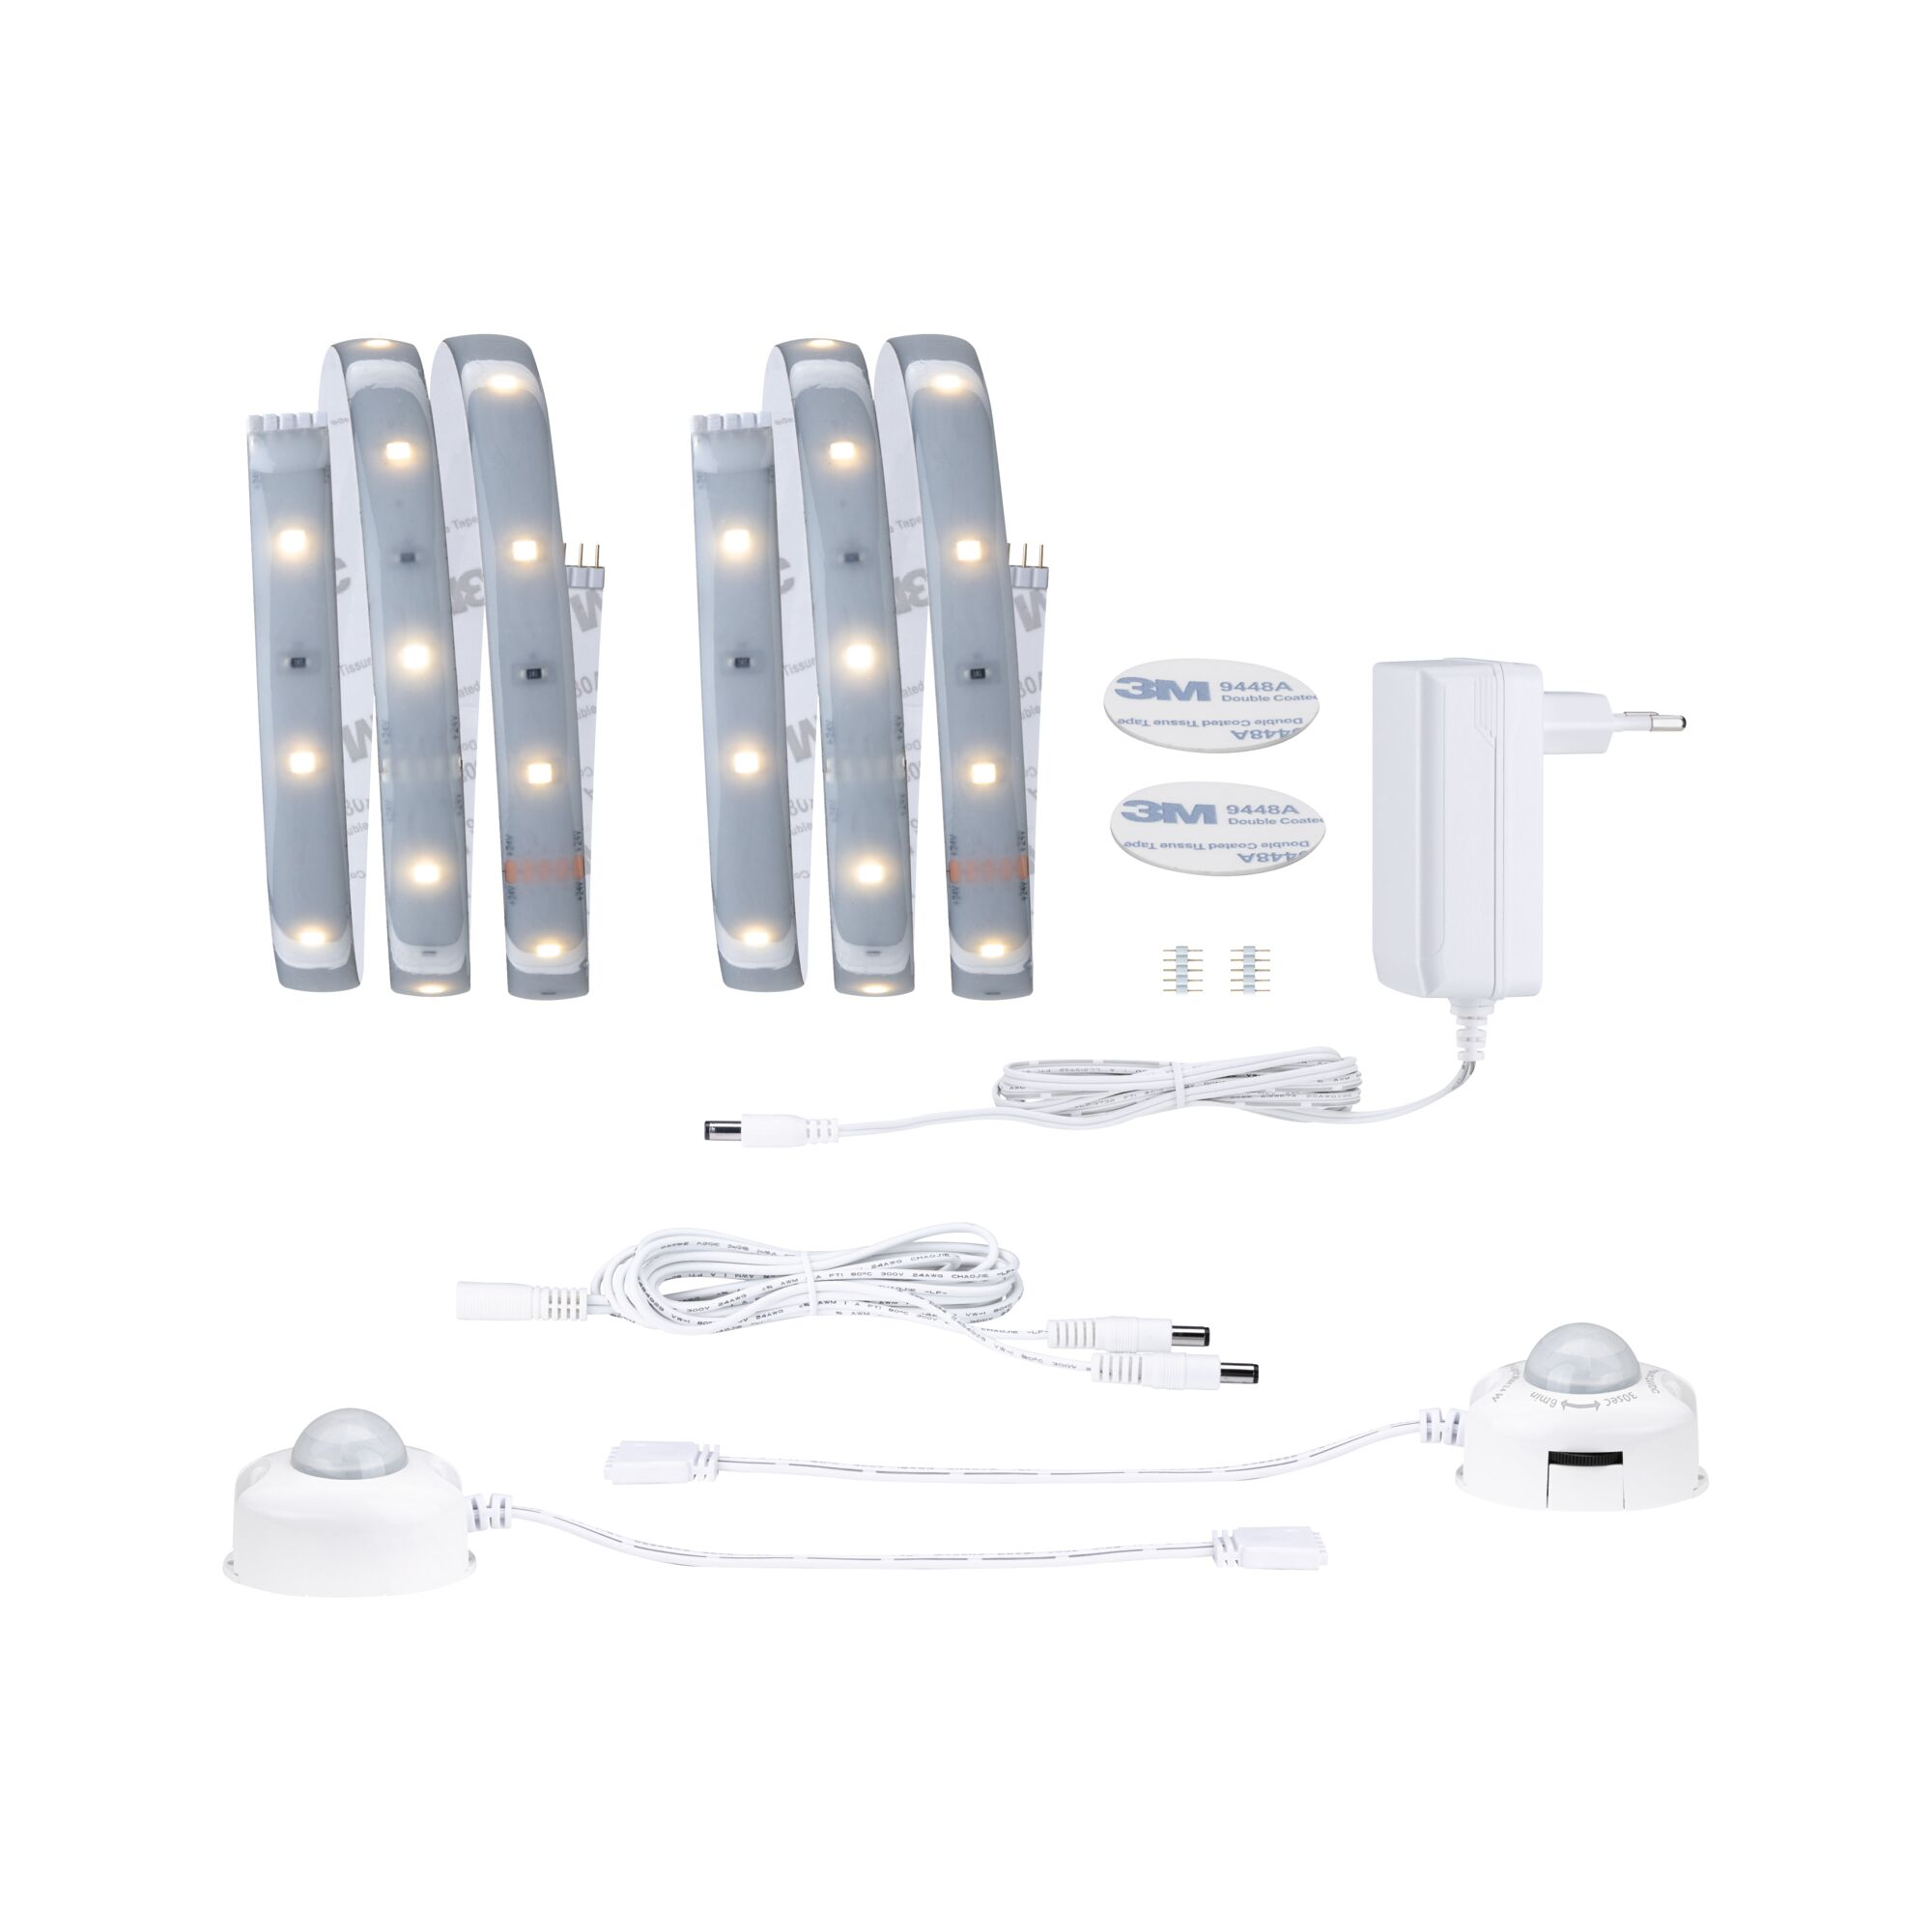 LED-Streifen-Set 'MaxLED 250 Comfort' 2 x 100 cm, 4 W 300 lm 2700 K, Warmweiß mit Bewegungsmelder + product picture